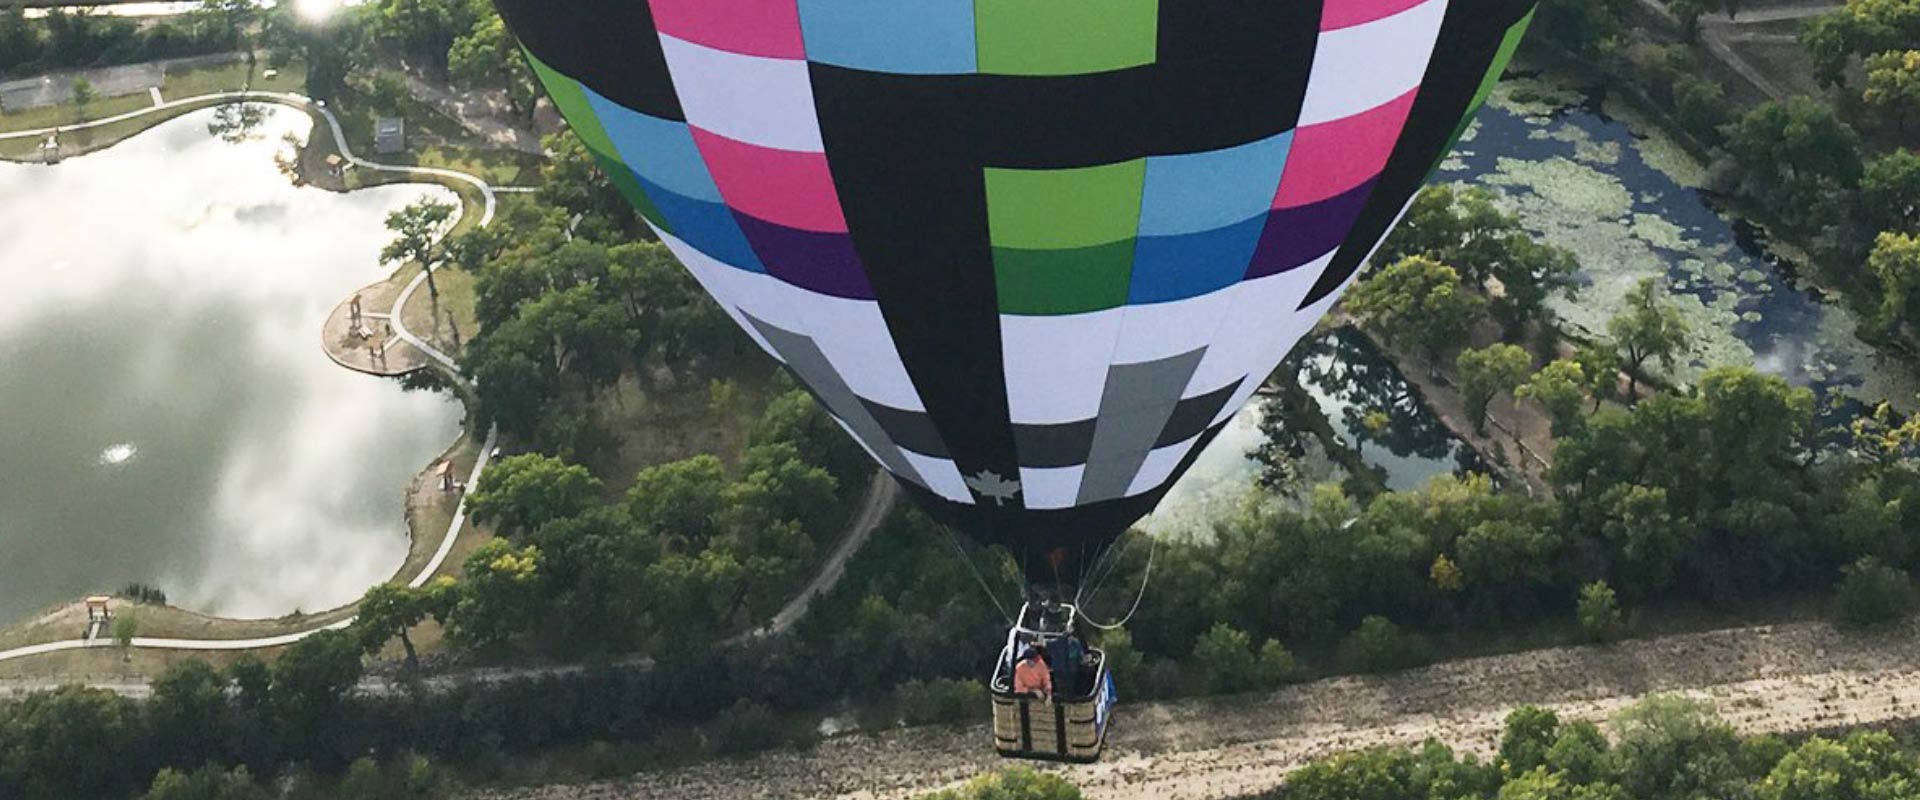 Enjoy Breathtaking Views with Balloon Rides